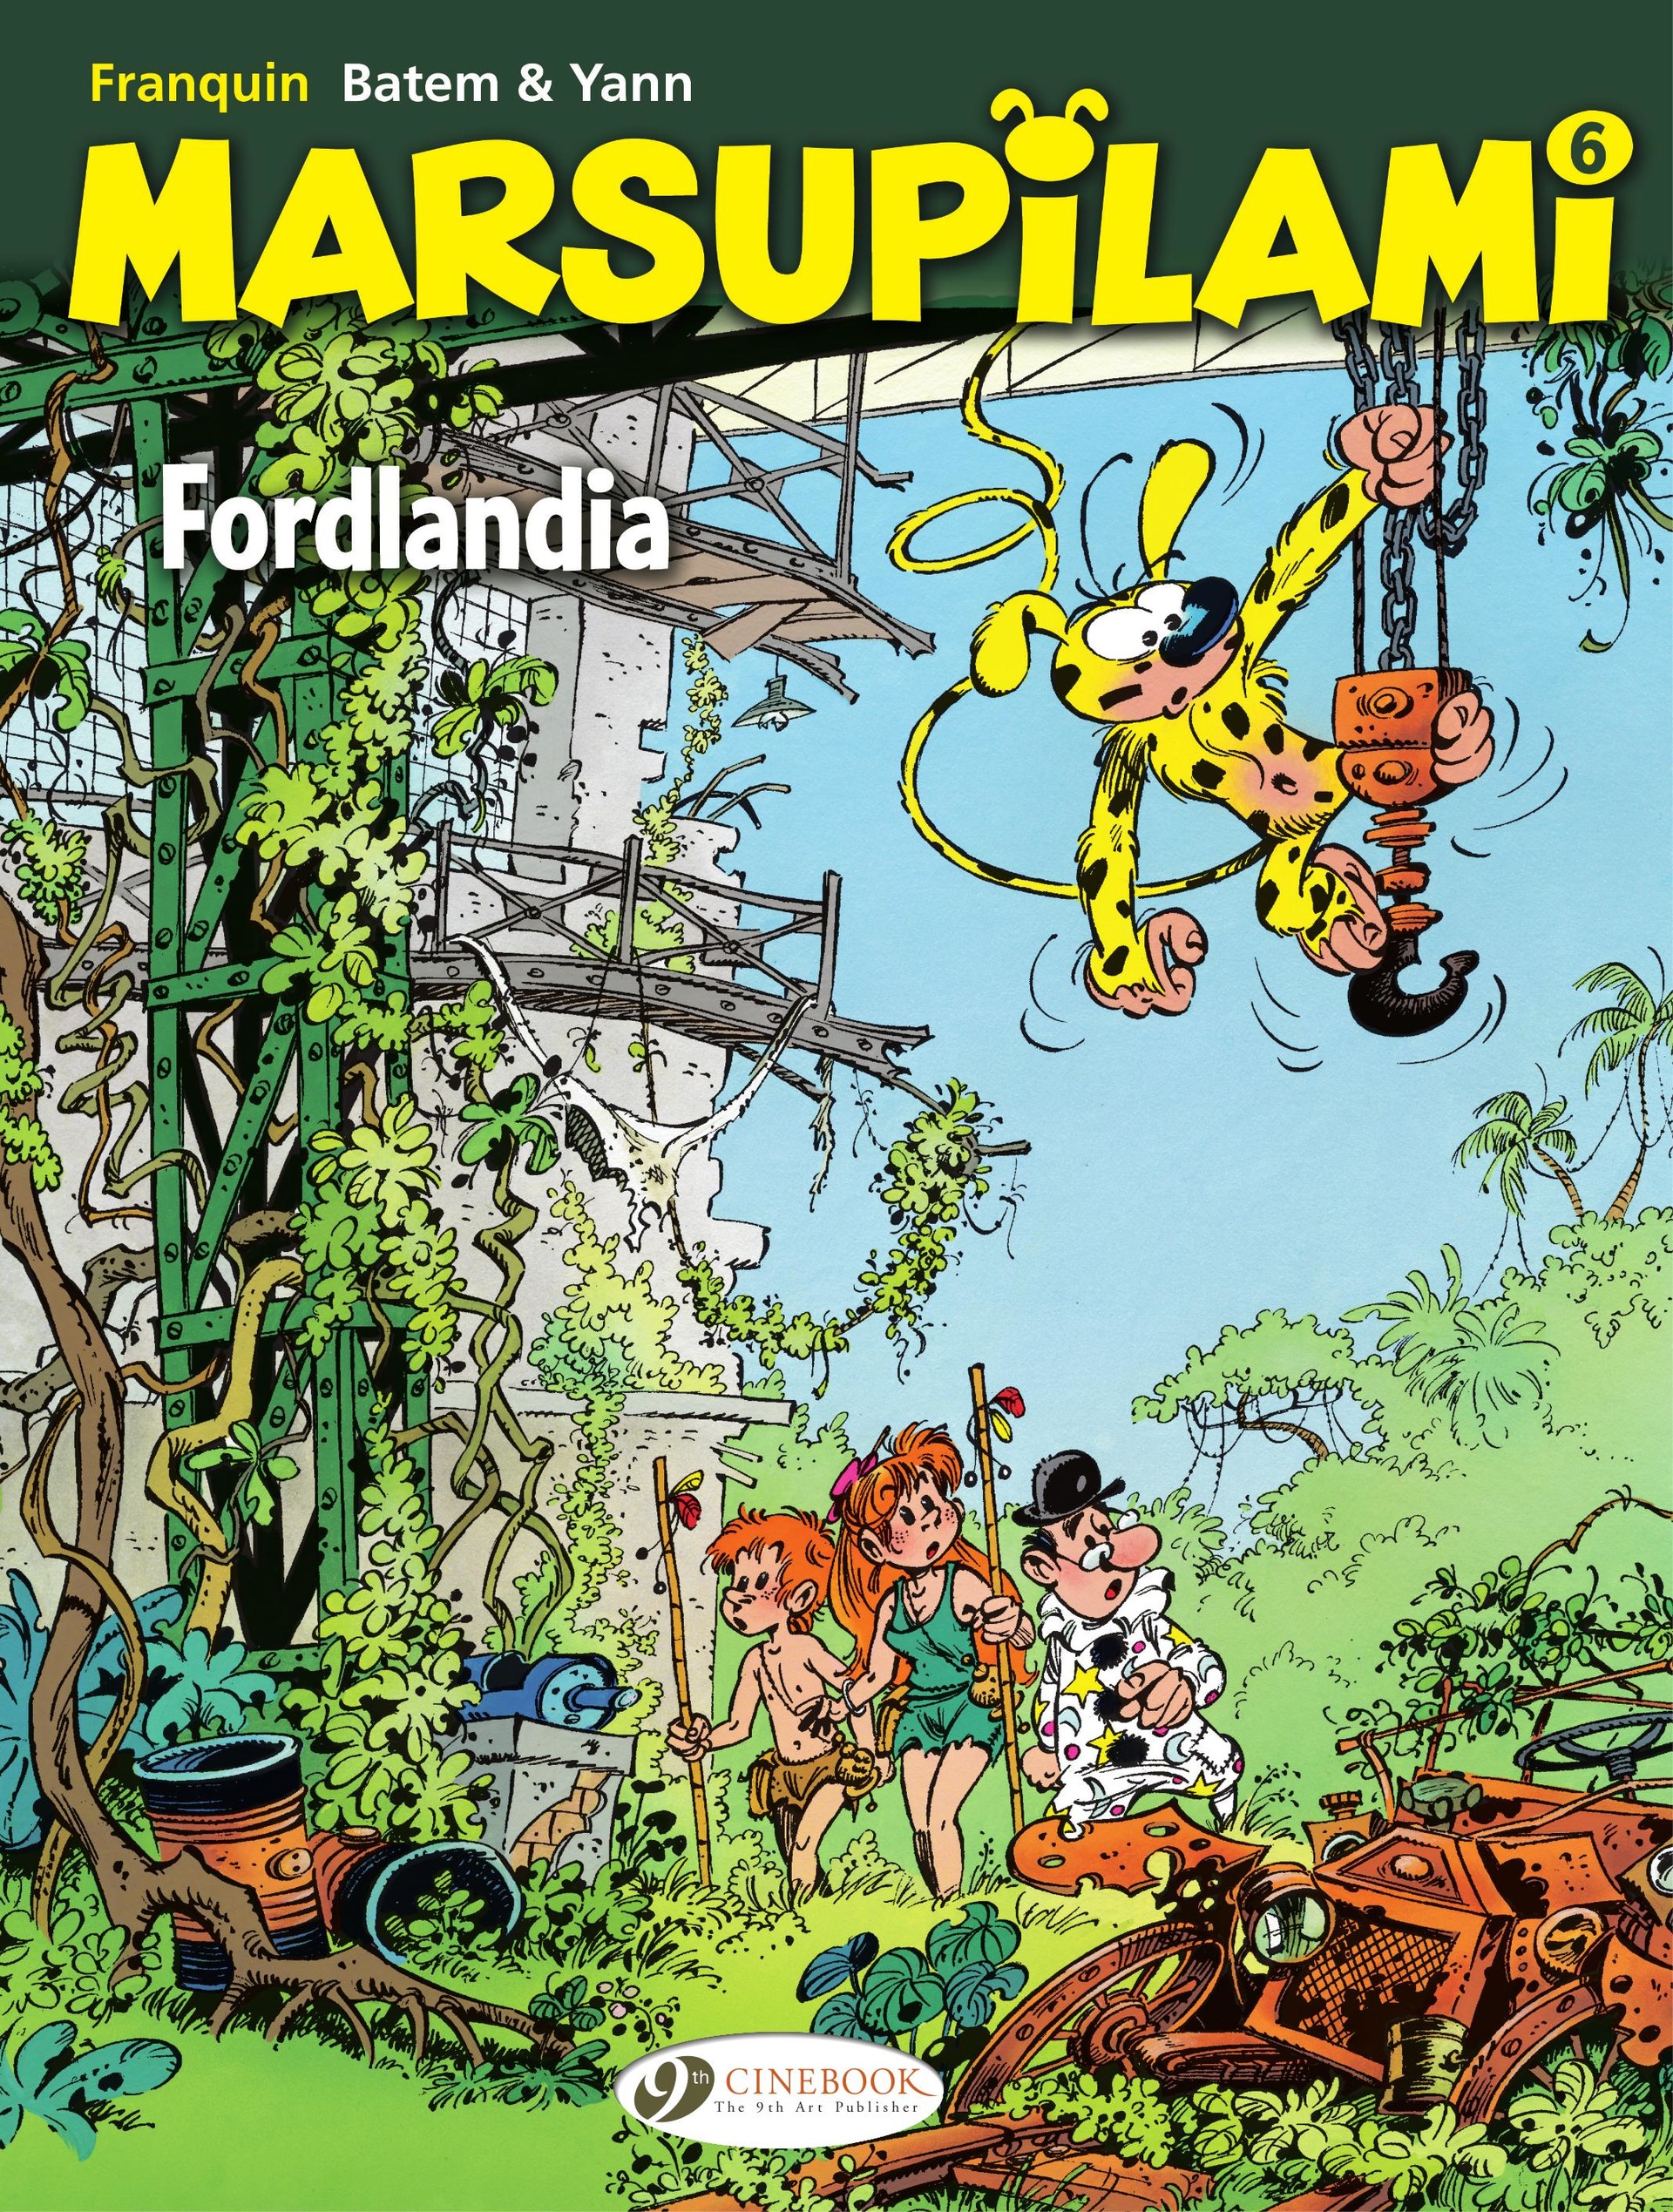 Read online Marsupilami comic -  Issue #6 - 1